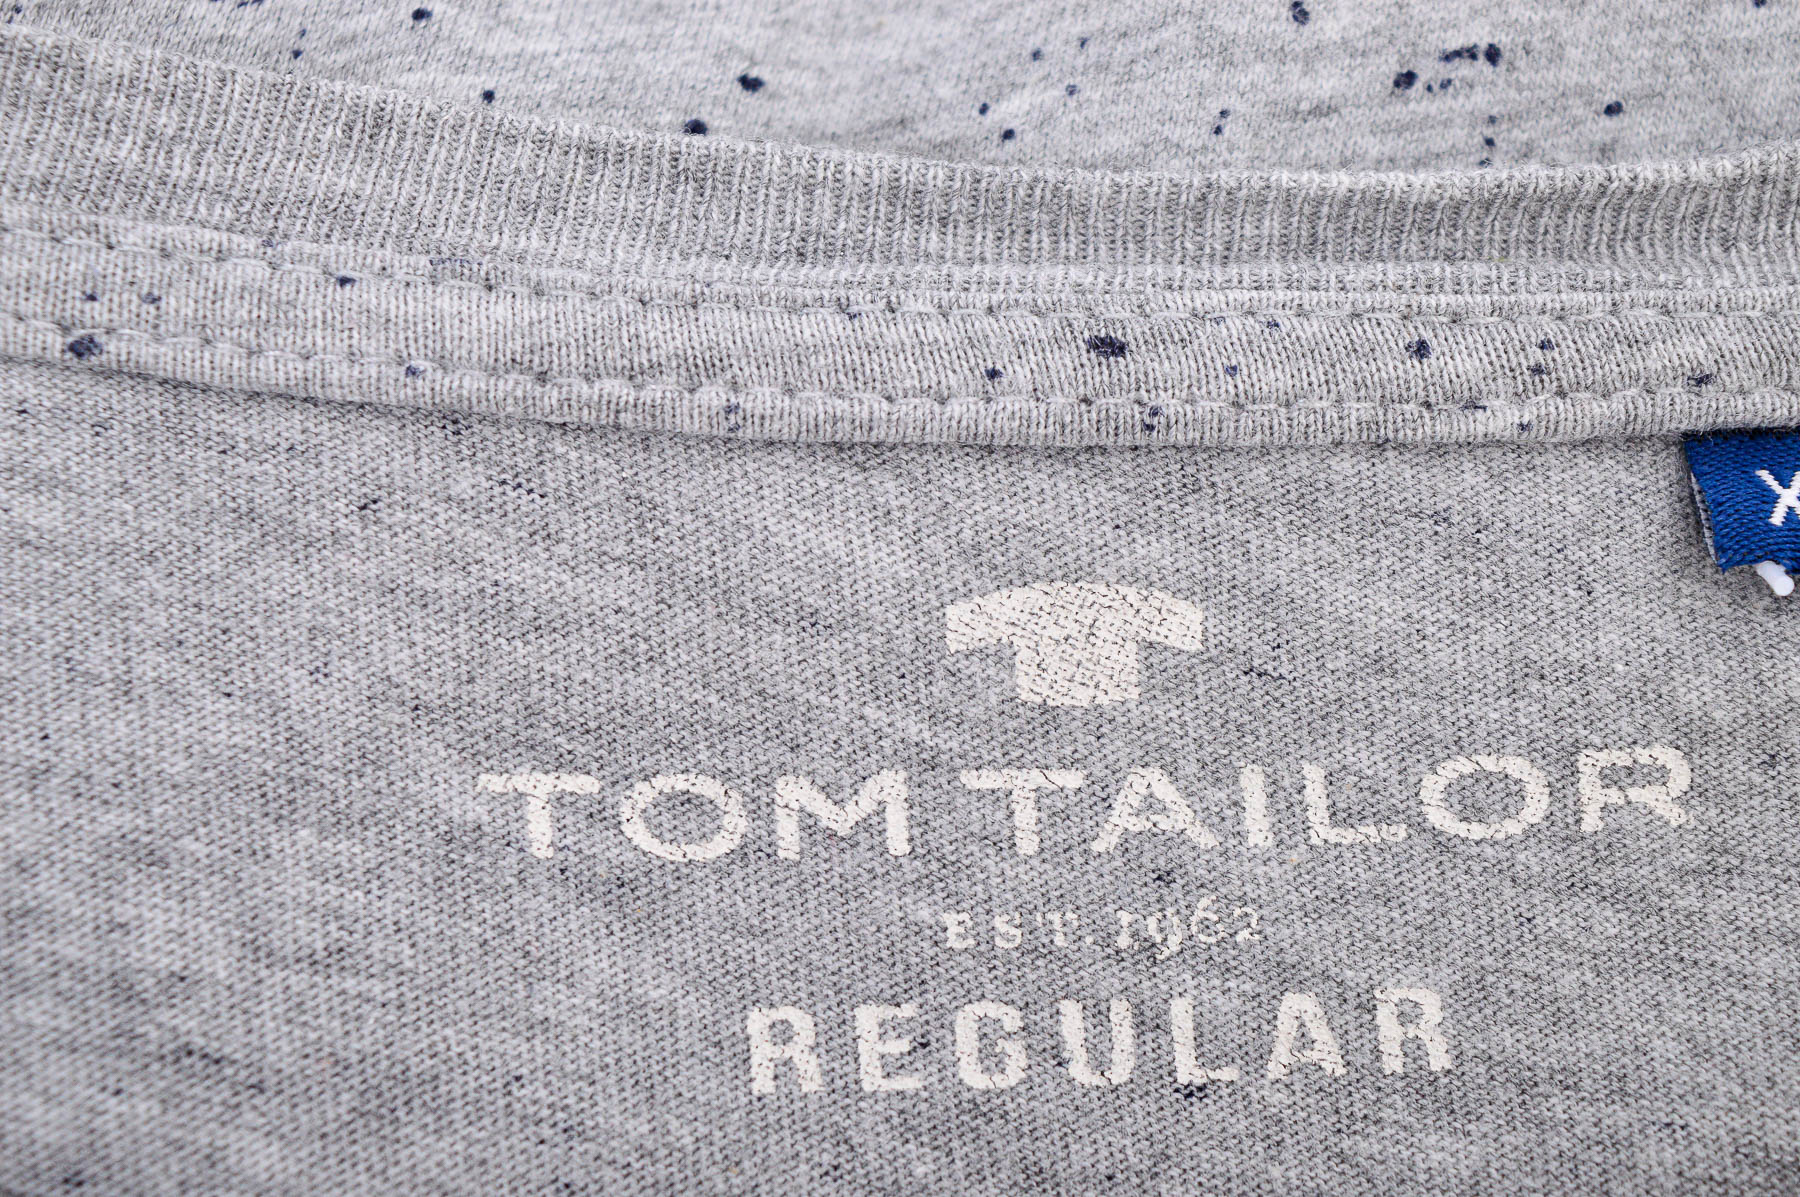 Ανδρική μπλούζα - TOM TAILOR - 2